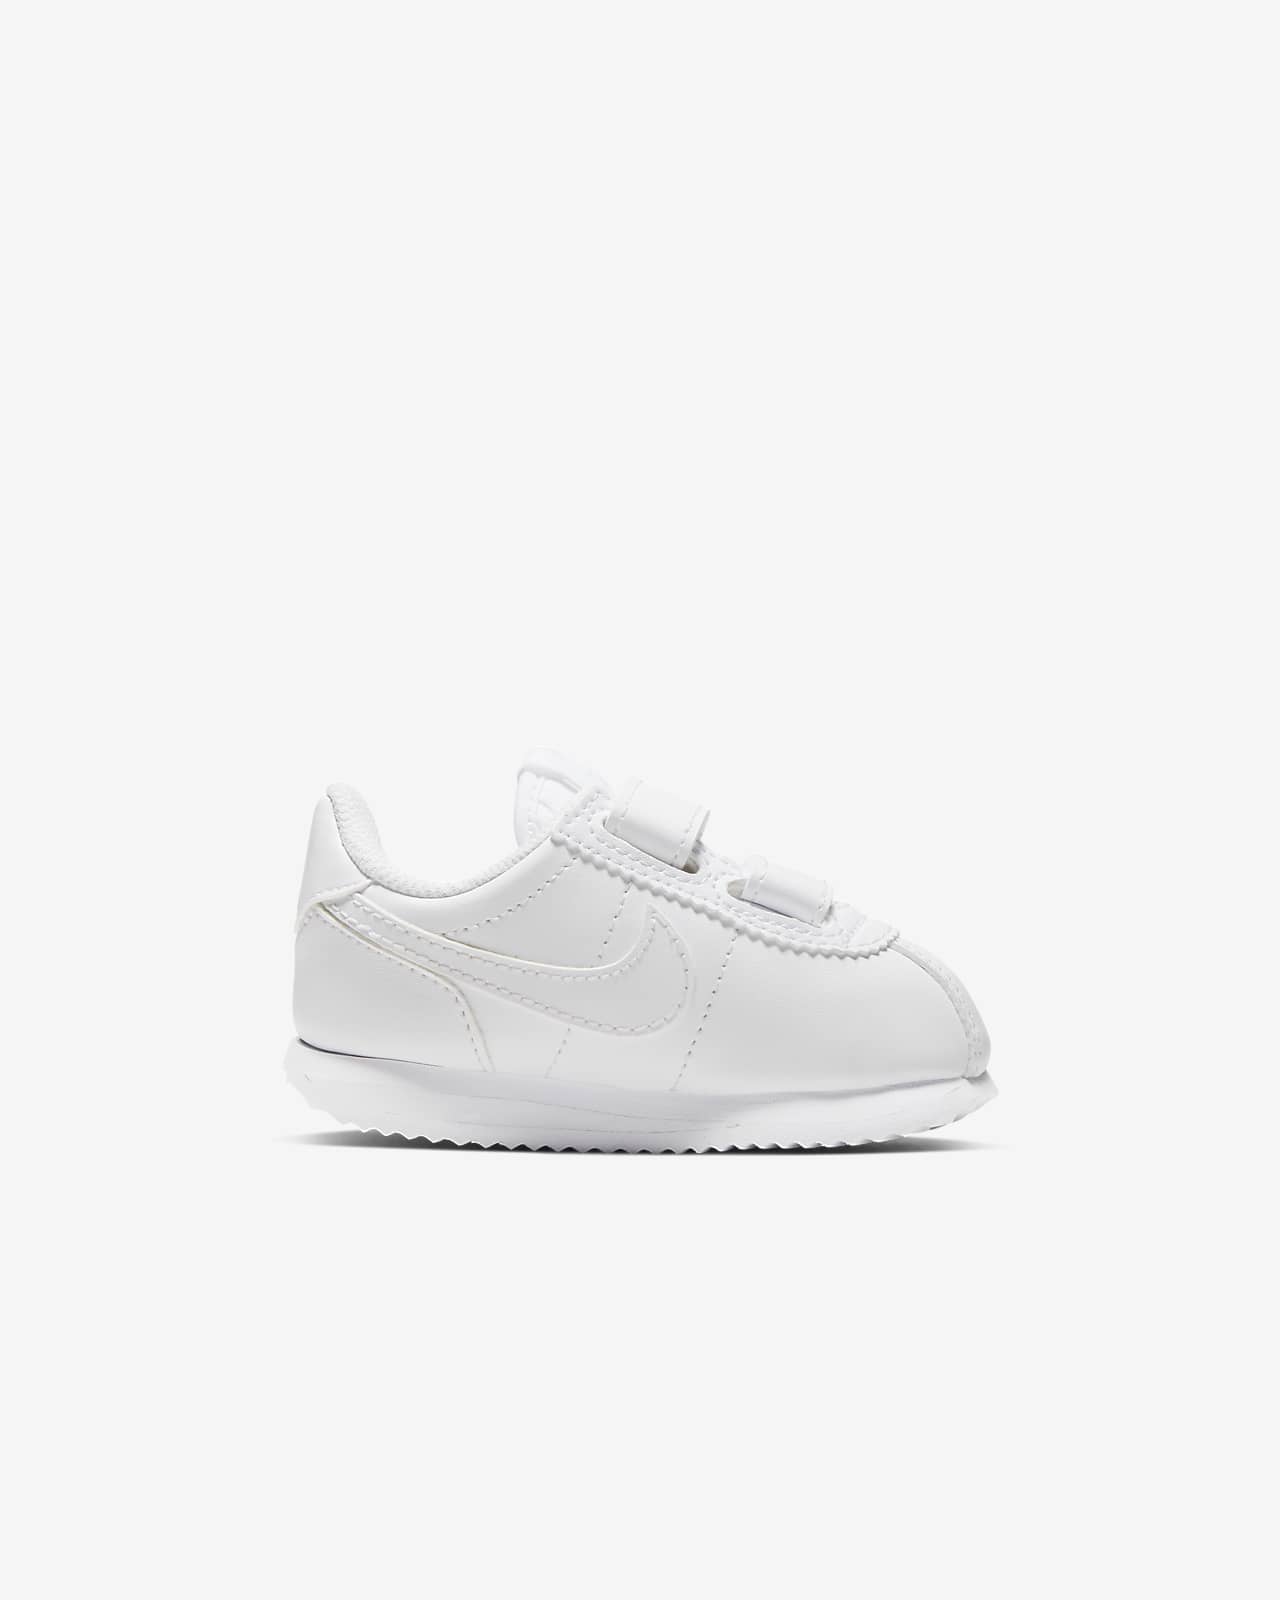 Nike Cortez Basic Baby/Toddler Shoe 